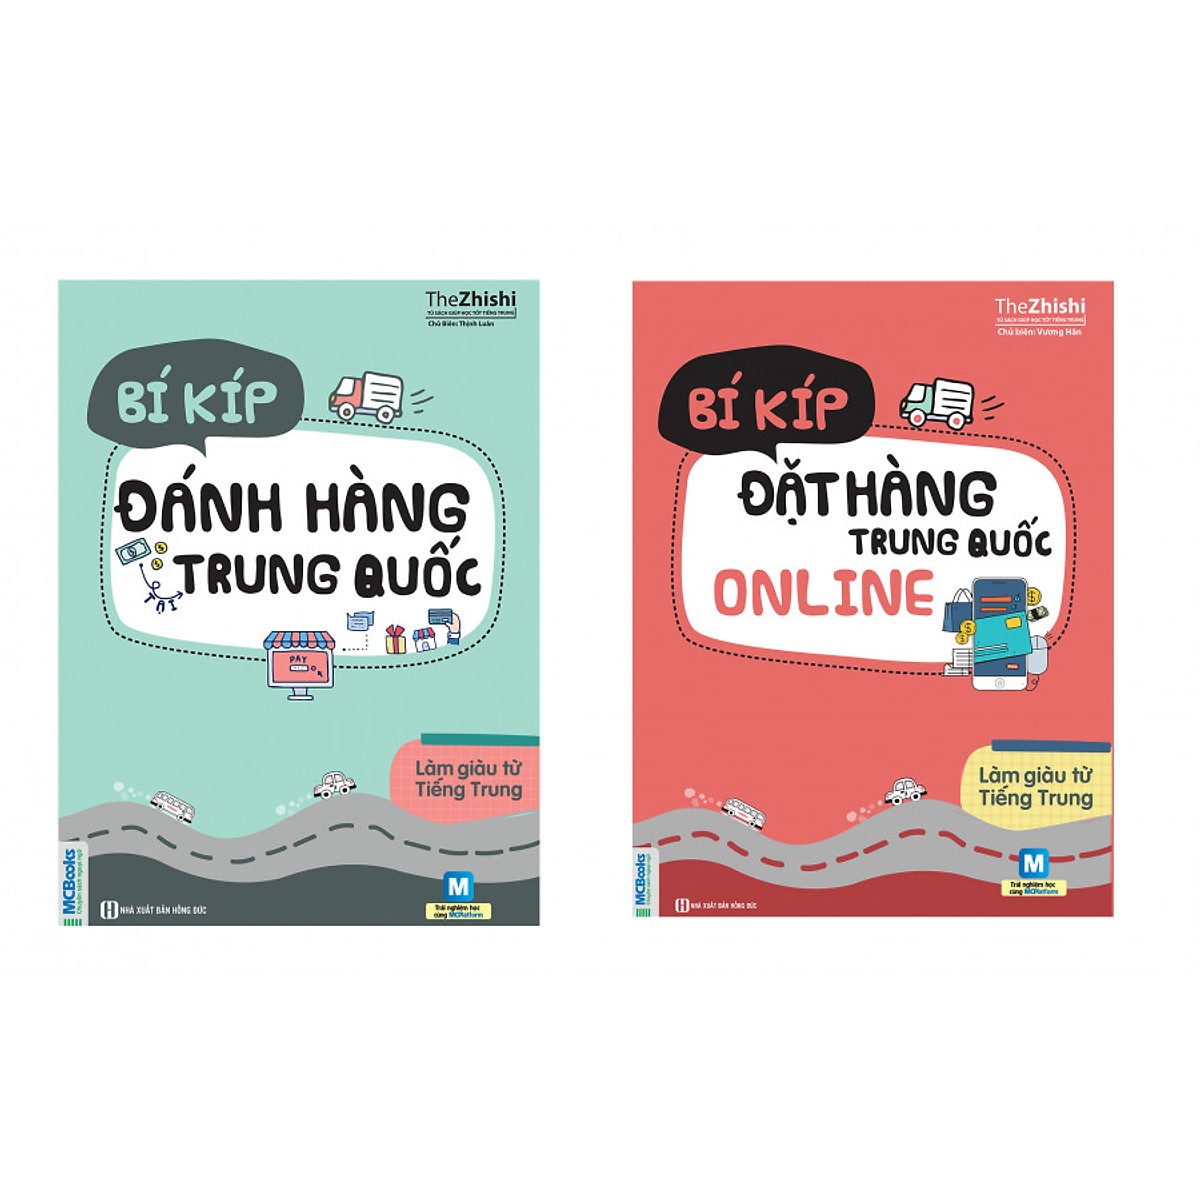 Combo Sách Bí Kíp Làm Giàu Từ Trung Quốc - Đặt Hàng Online Và Đánh Hàng Trung Quốc (Tặng kèm bút chì Kingbooks)